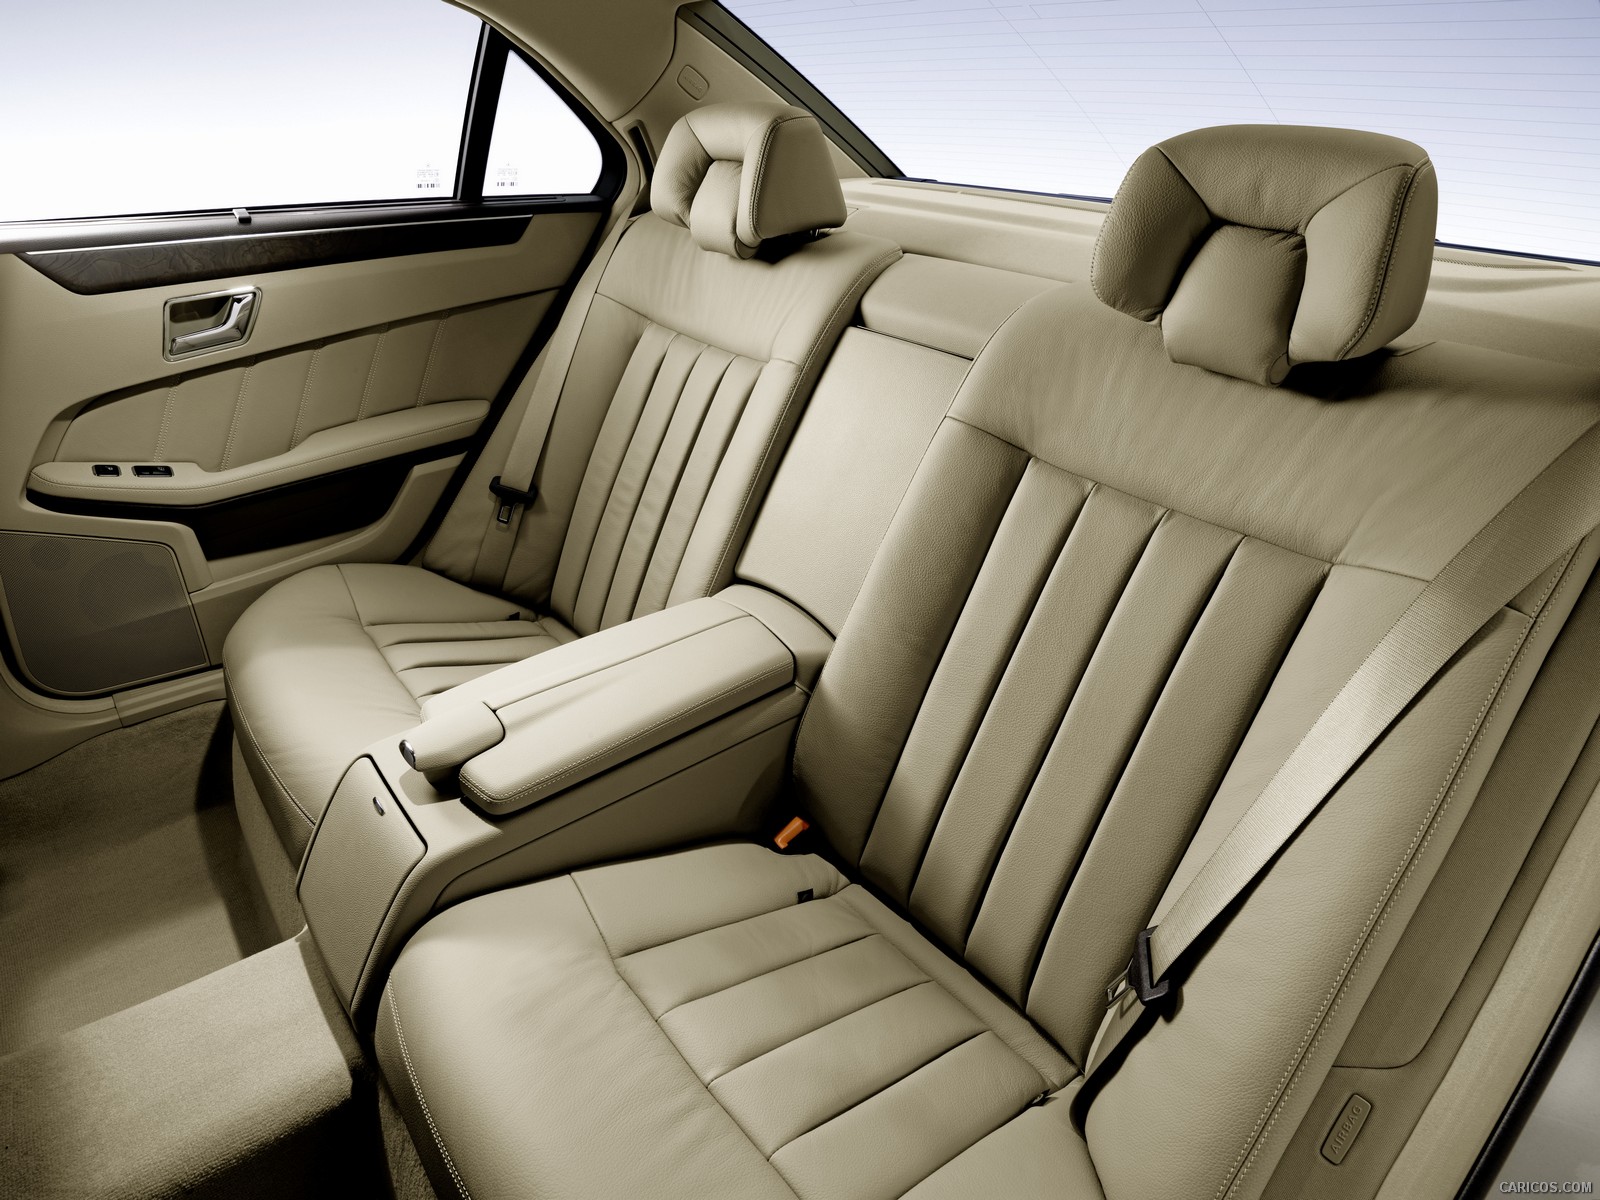 2010 Mercedes-Benz E-Class Sedan  - Interior Rear Seats View Photo, #151 of 261